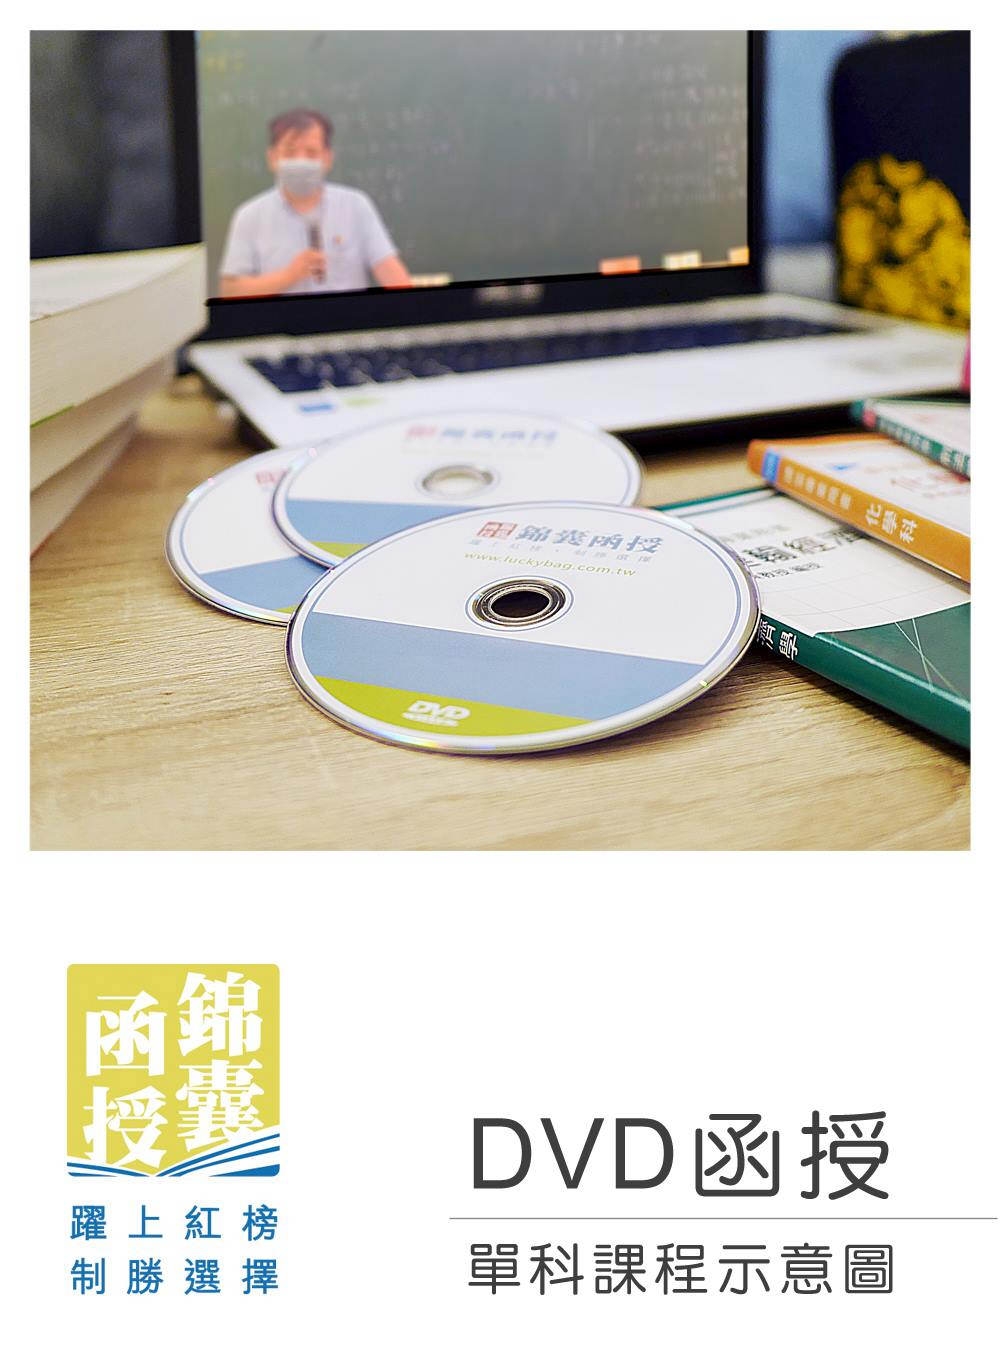 【DVD函授】英文-單科課程(111版)